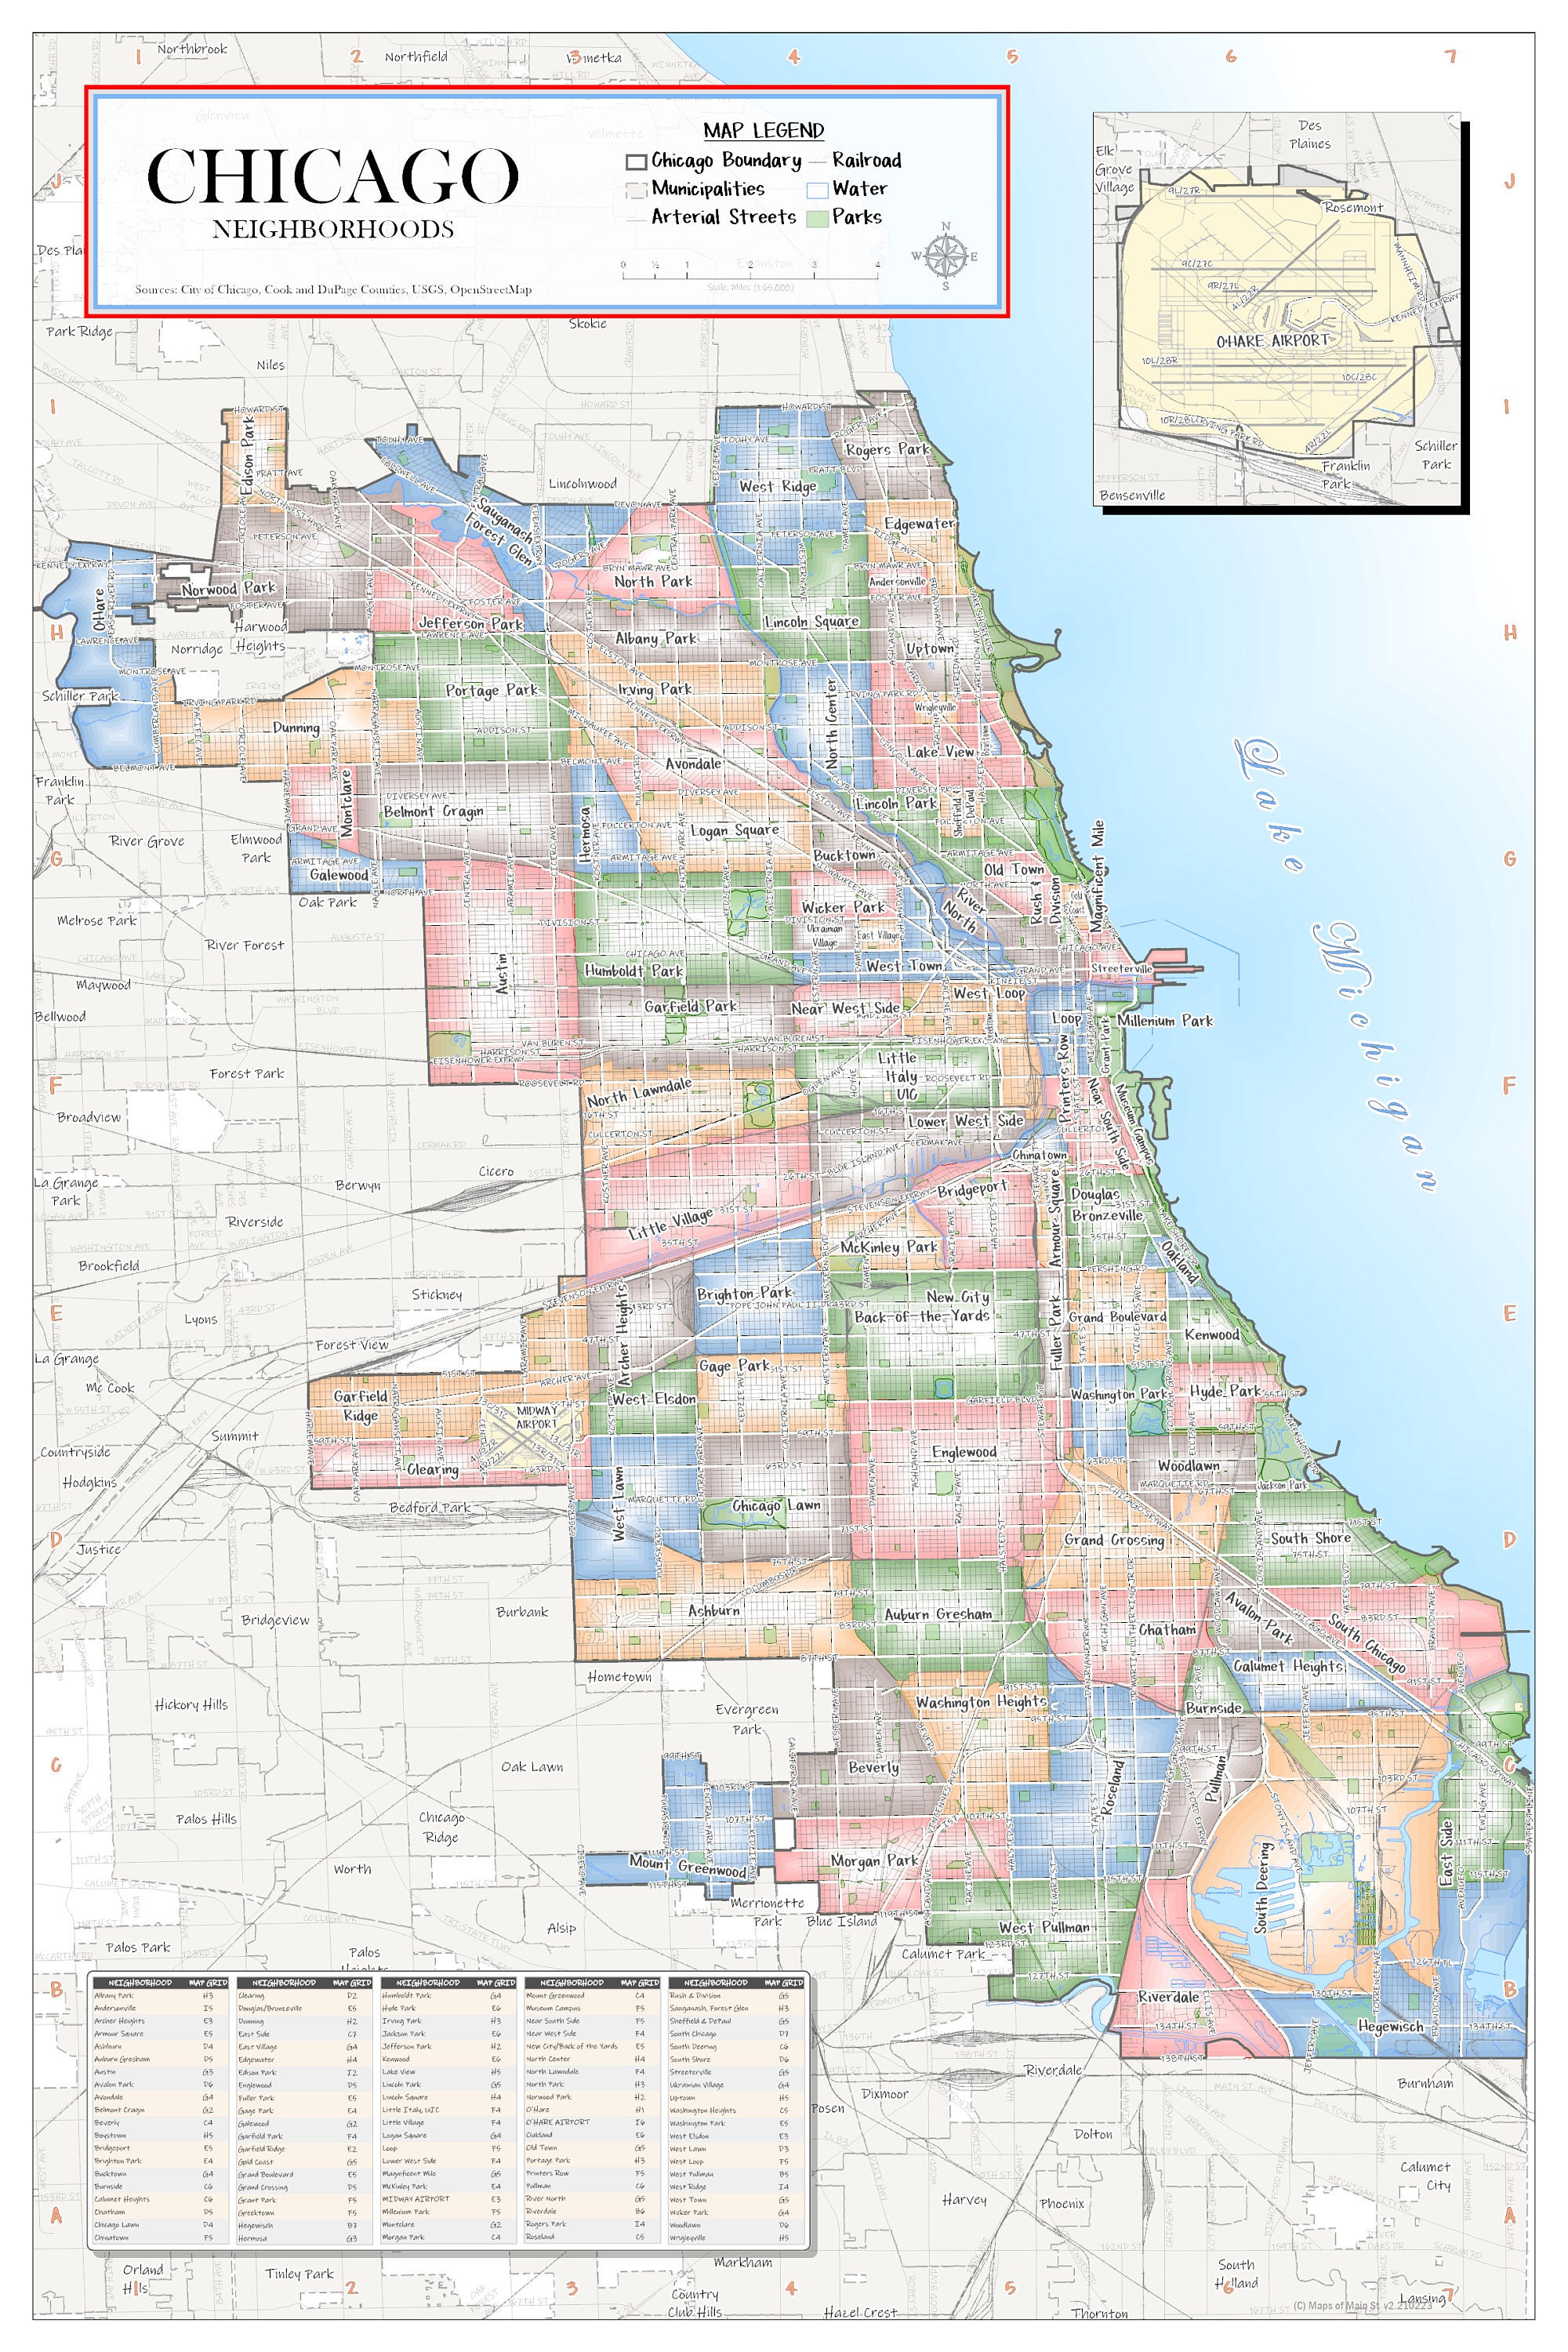 Chicago Neighborhood map v2 NEW RELEASE | Etsy